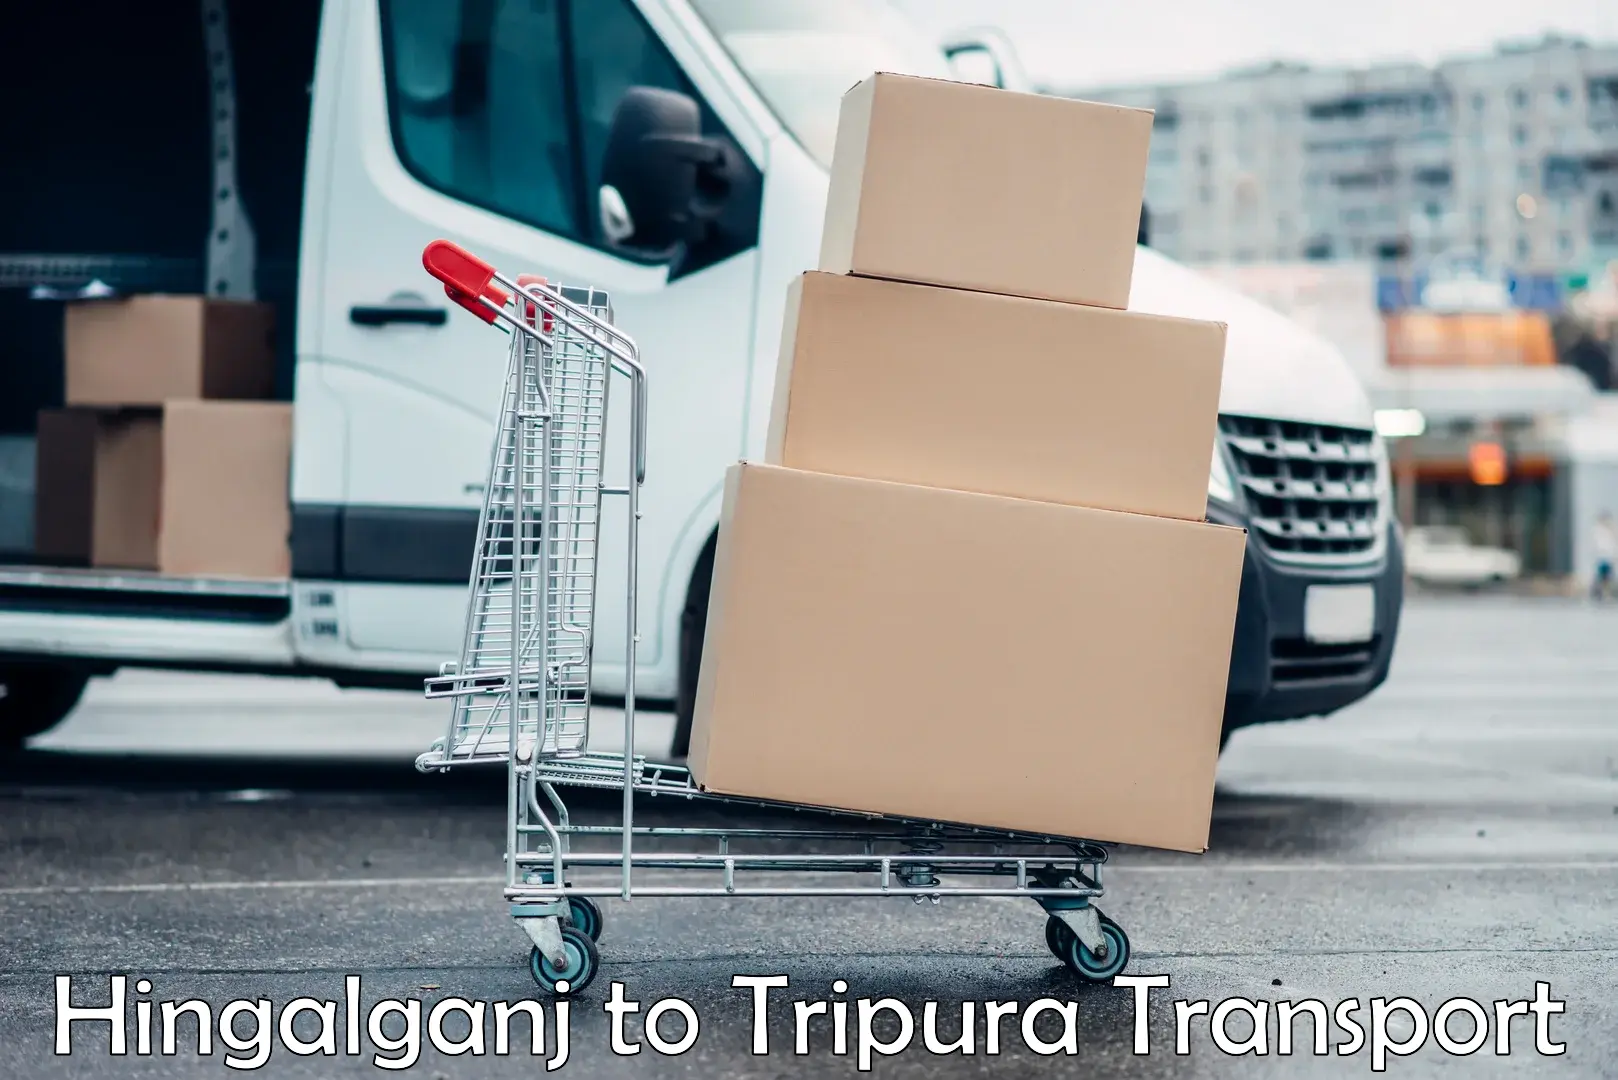 Furniture transport service Hingalganj to Bishalgarh